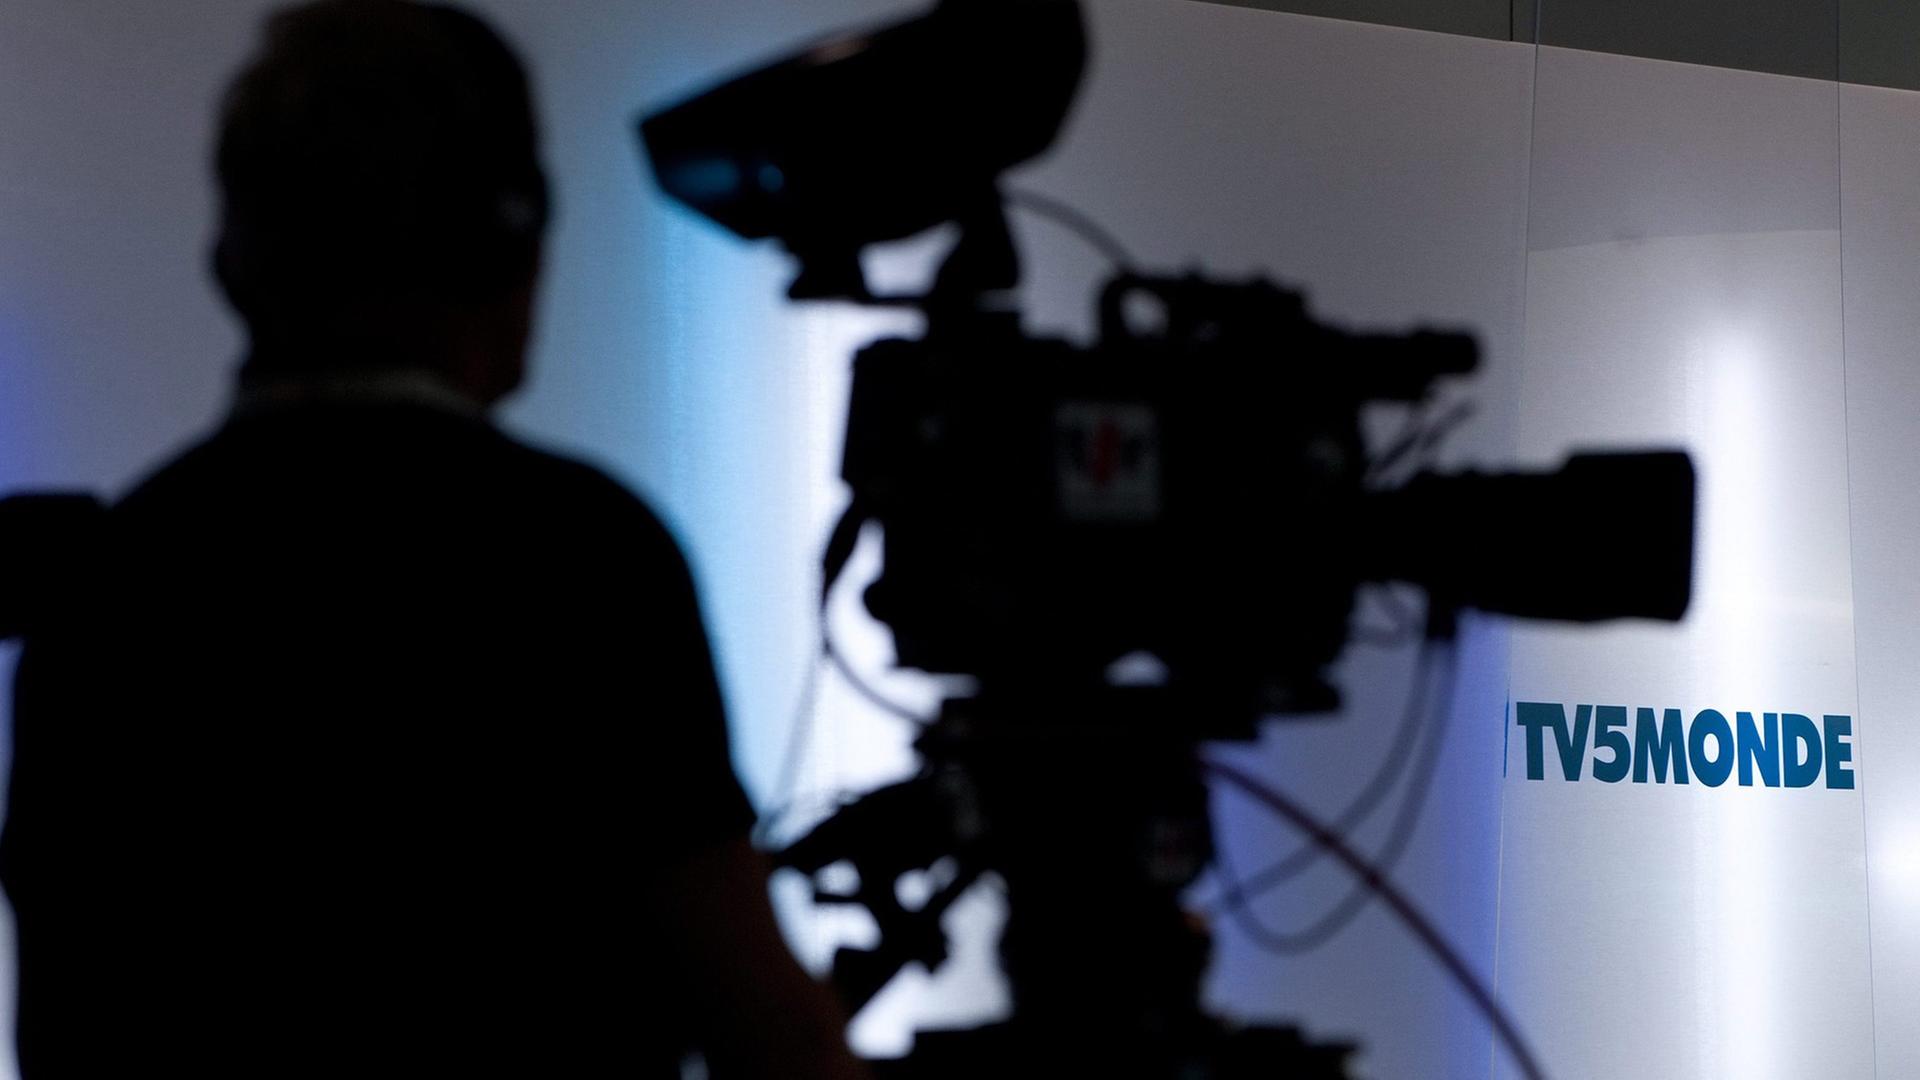 Schattenriss einer Fernsehkamera und ihres Kameramanns vor einer weißen Wand mit dem Logo von TV5 Monde.